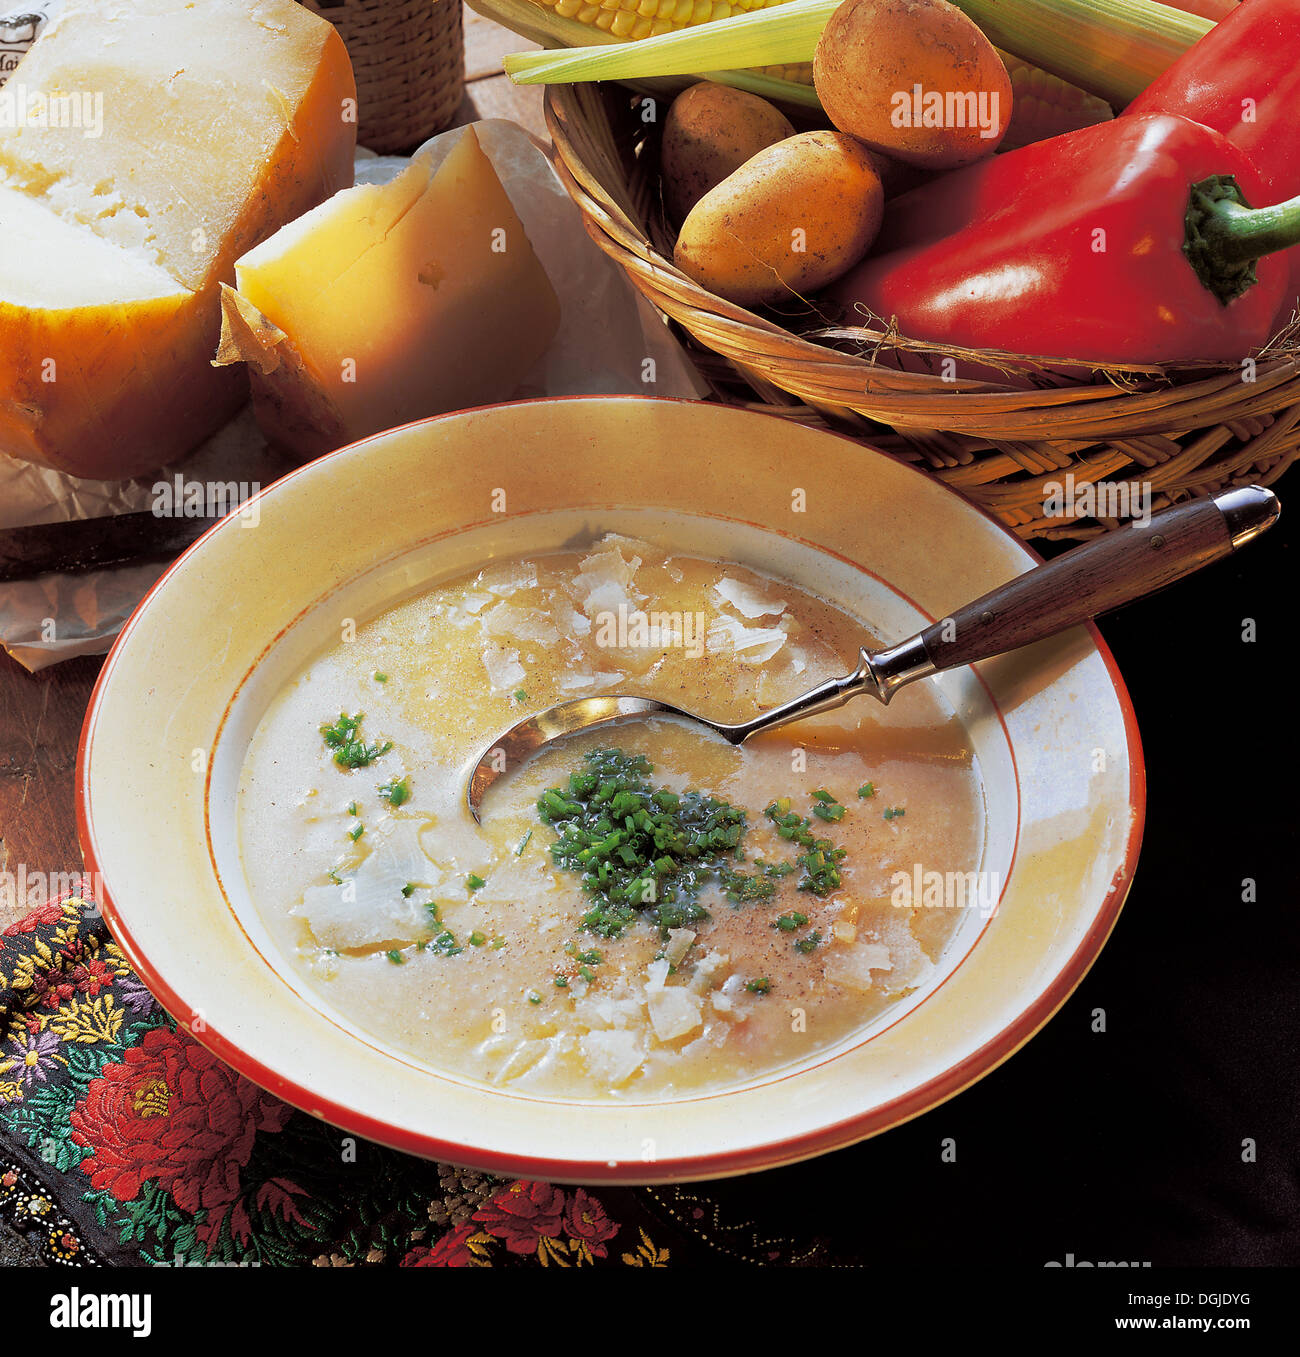 Soupe de pomme de terre et de fromage moldaves avec oignons, carottes et fromage de brebis, Moldavie. Banque D'Images